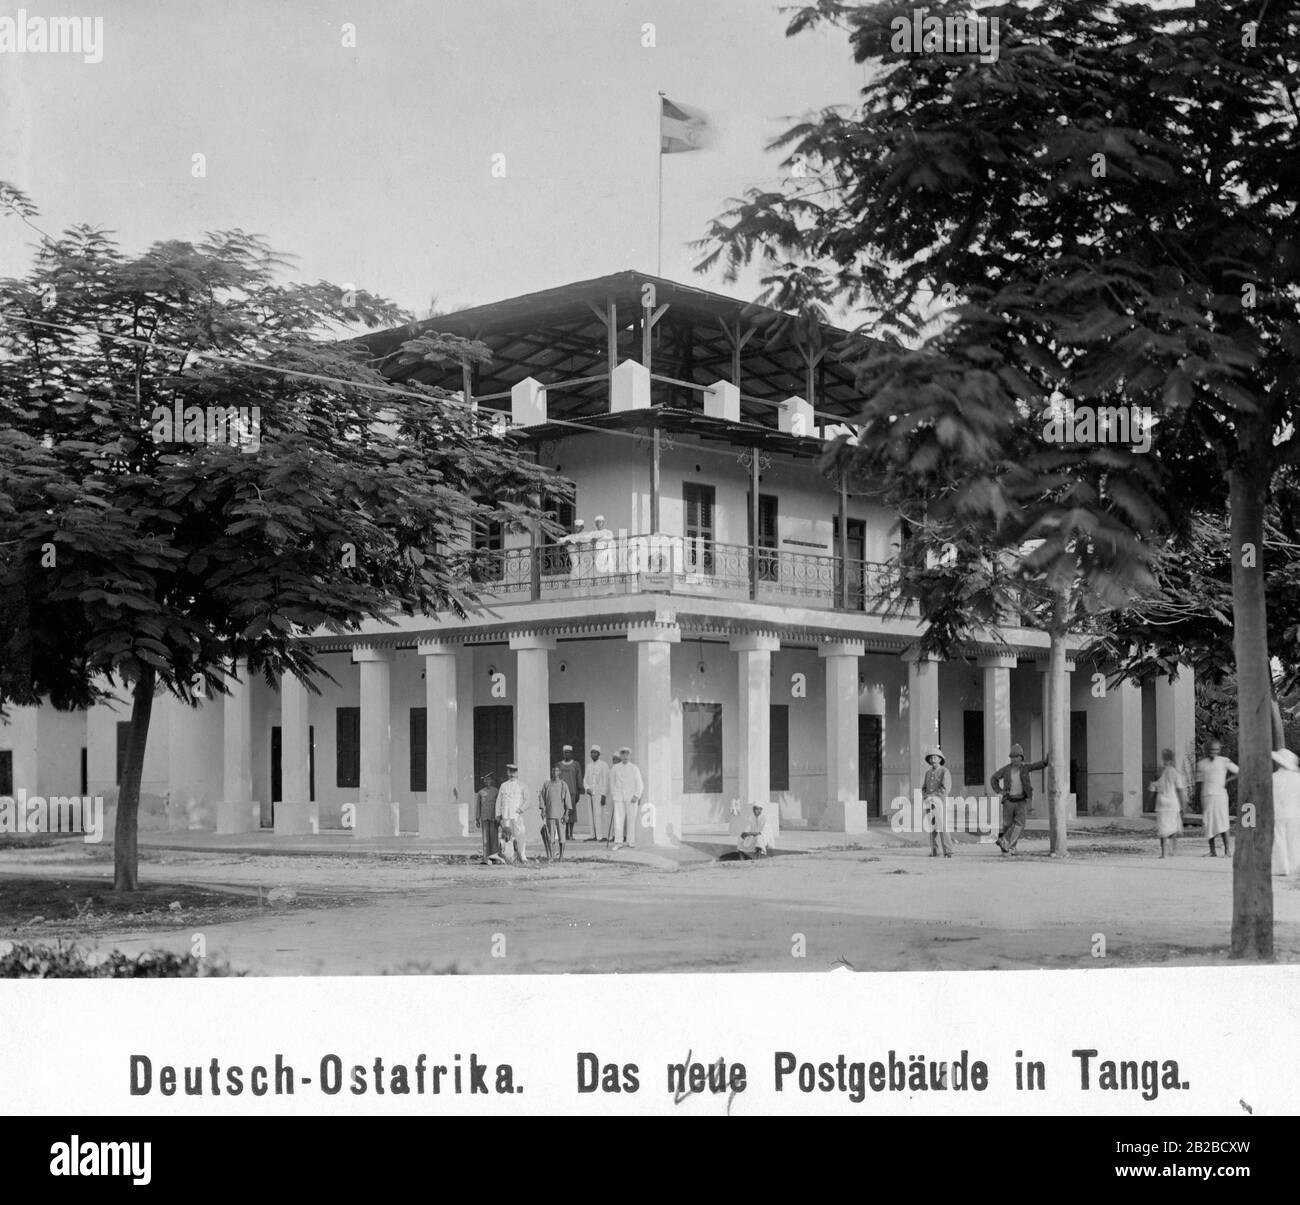 Il nuovo edificio di uffici postali in stile coloniale costruito dai tedeschi a Tanga nell'Africa orientale tedesca, l'odierna Tanzania. Foto non ondulata. Foto Stock